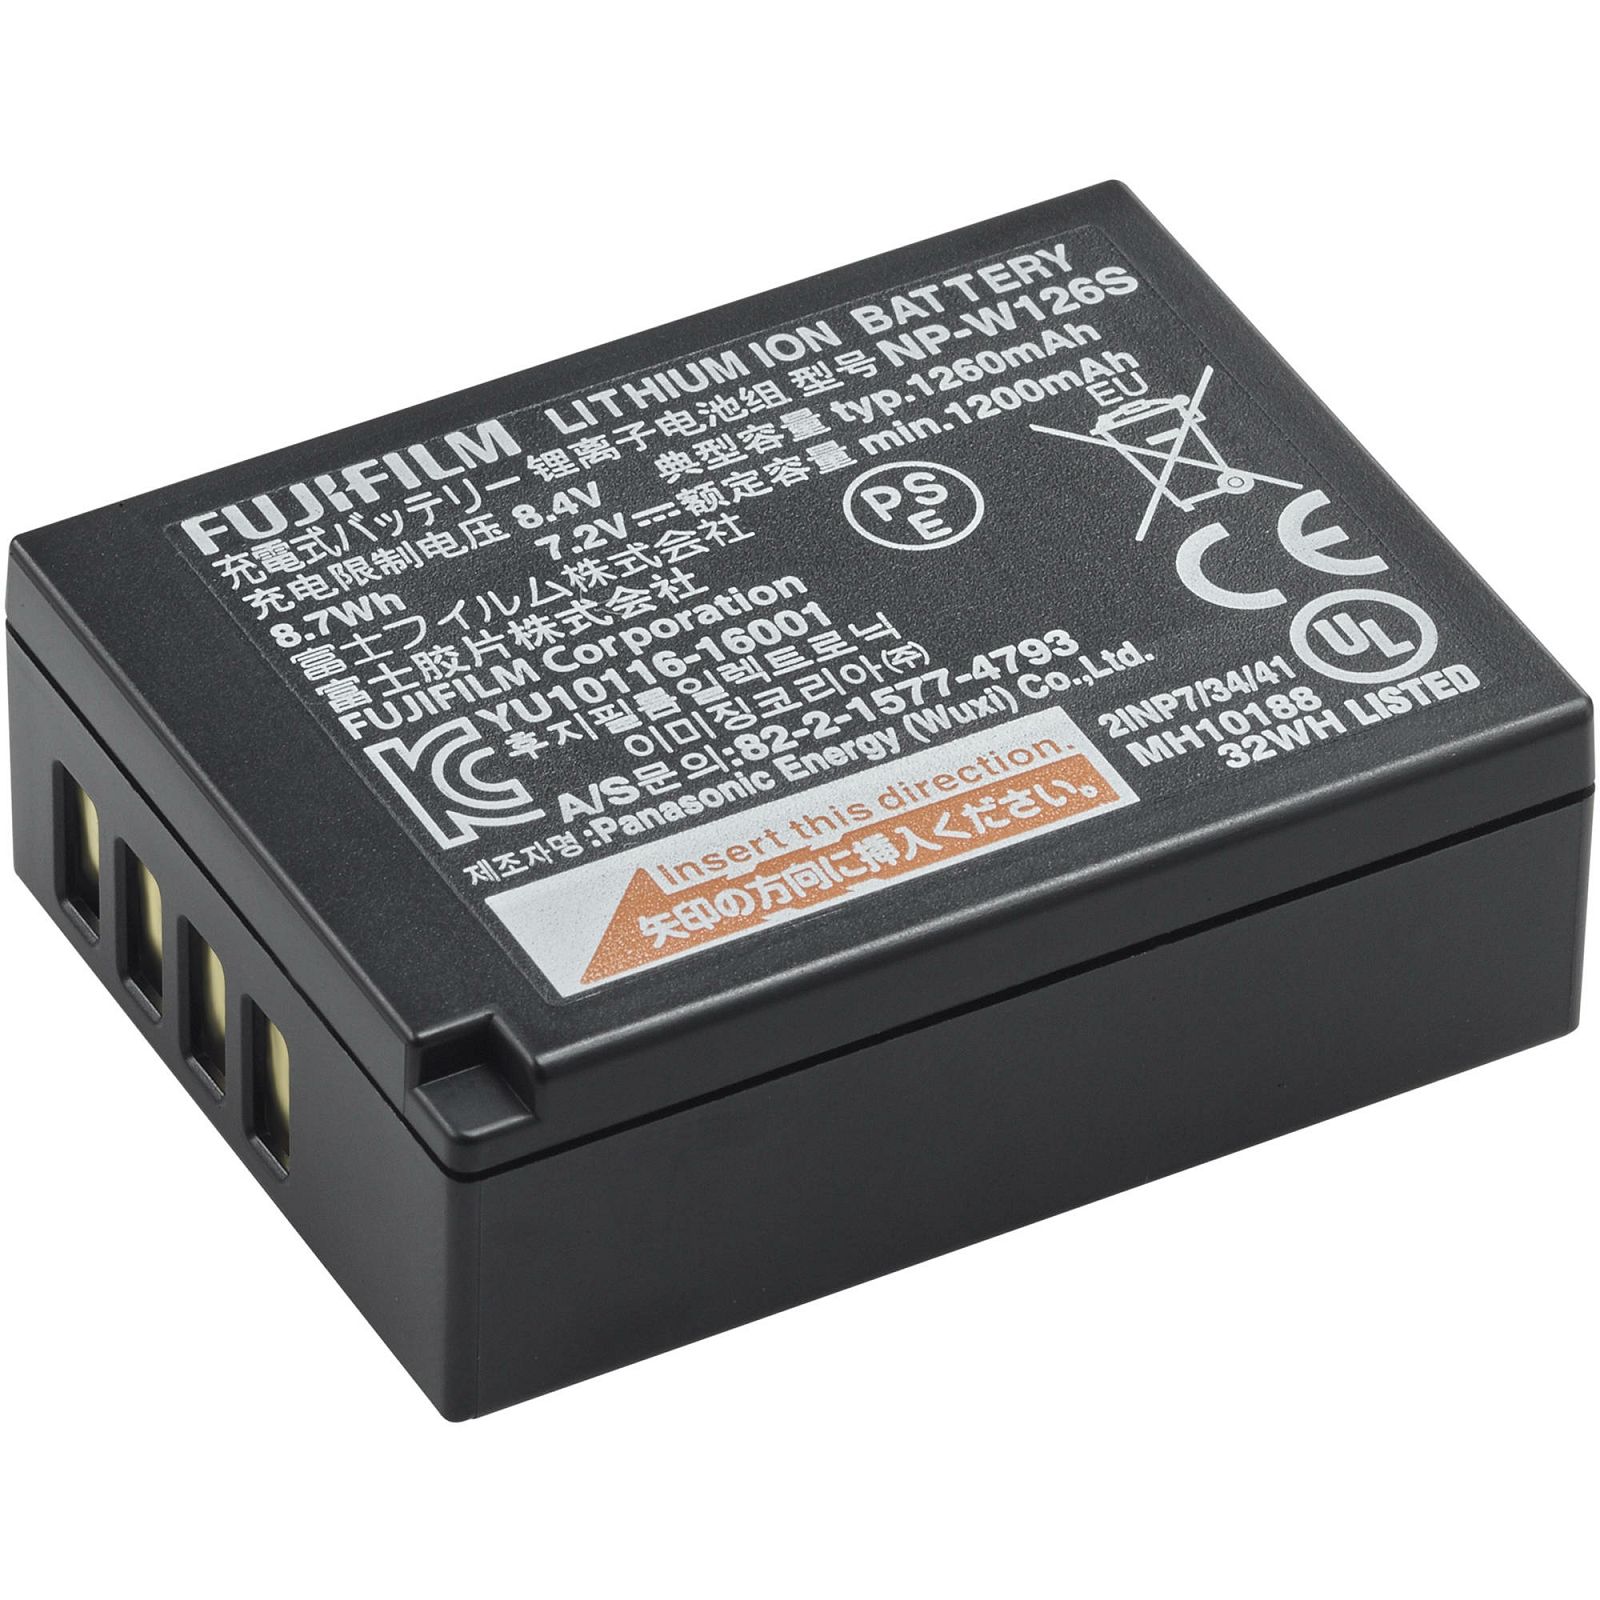 Fujifilm NP-W126S 1260mAh 7.2V baterija za Fuji FinePix X-Pro2, X-T2, T500, HS30EXR, HS33EXR, HS50EXR, X-Pro1, X-A1, X-A2, X-E1, X-E2, X-T1, X-T10 Lithium-Ion Rechargeable Battery